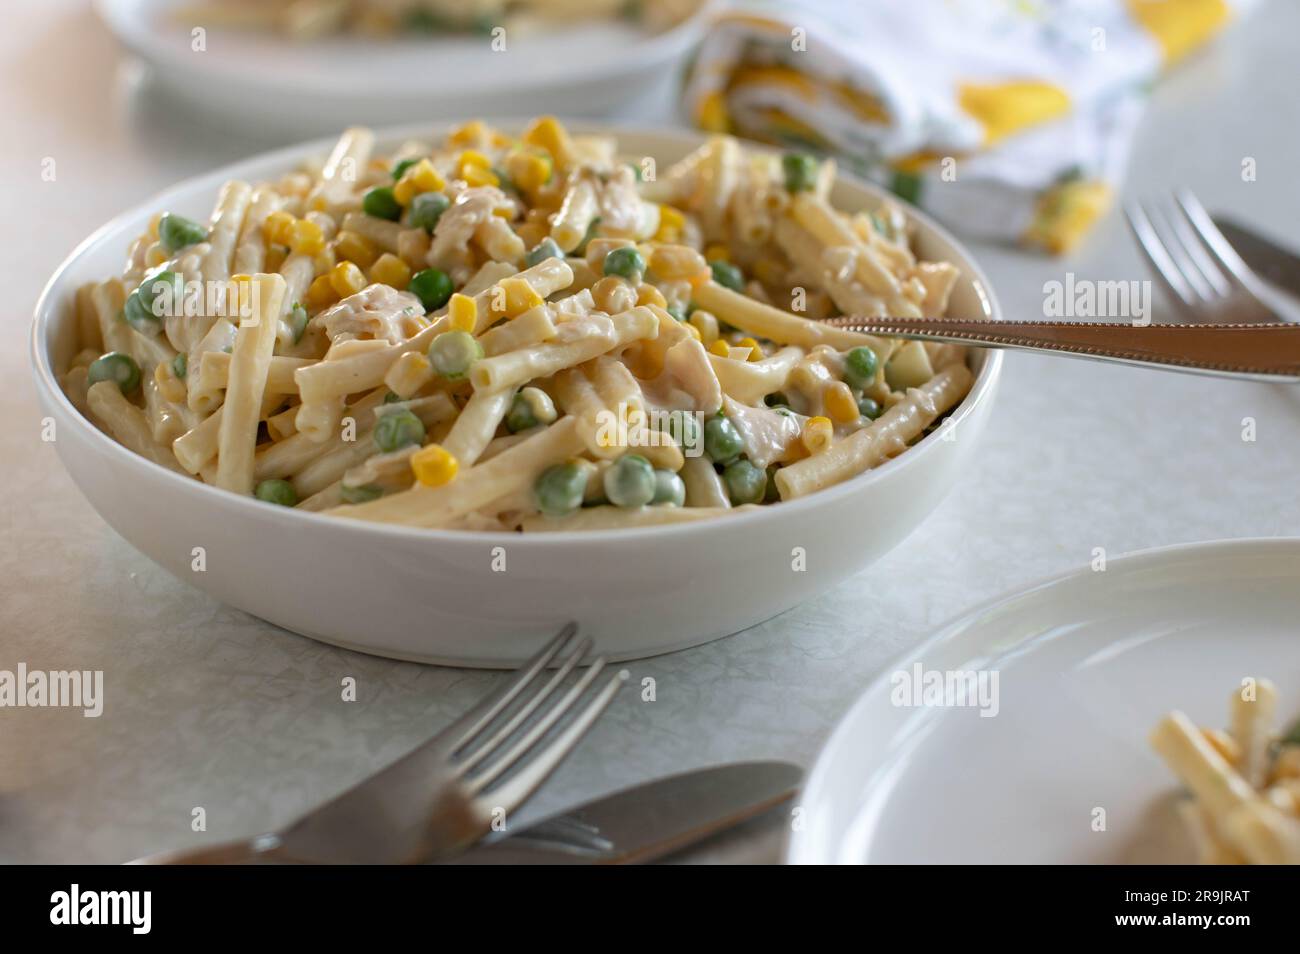 Insalata di pasta con maionese, mais, piselli verdi, prosciutto e uova bollite in un recipiente Foto Stock